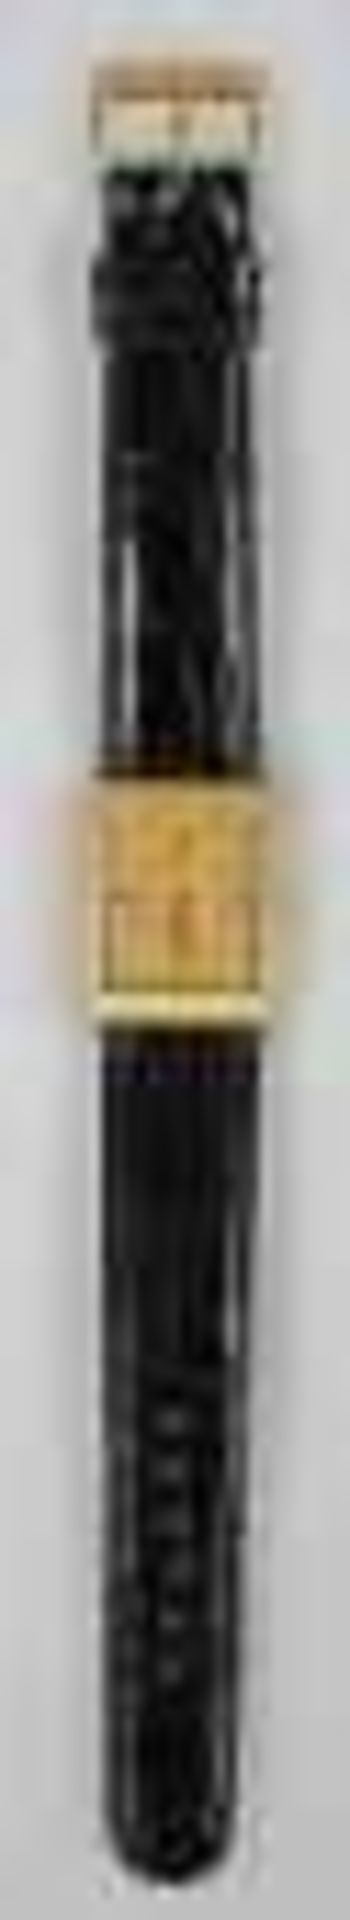 ARMBANDUHR Rolex Celini, Quartz, rechteckiges verziertes Goldgehäuse 18ct, mit goldenem Zifferblatt, - Bild 2 aus 2